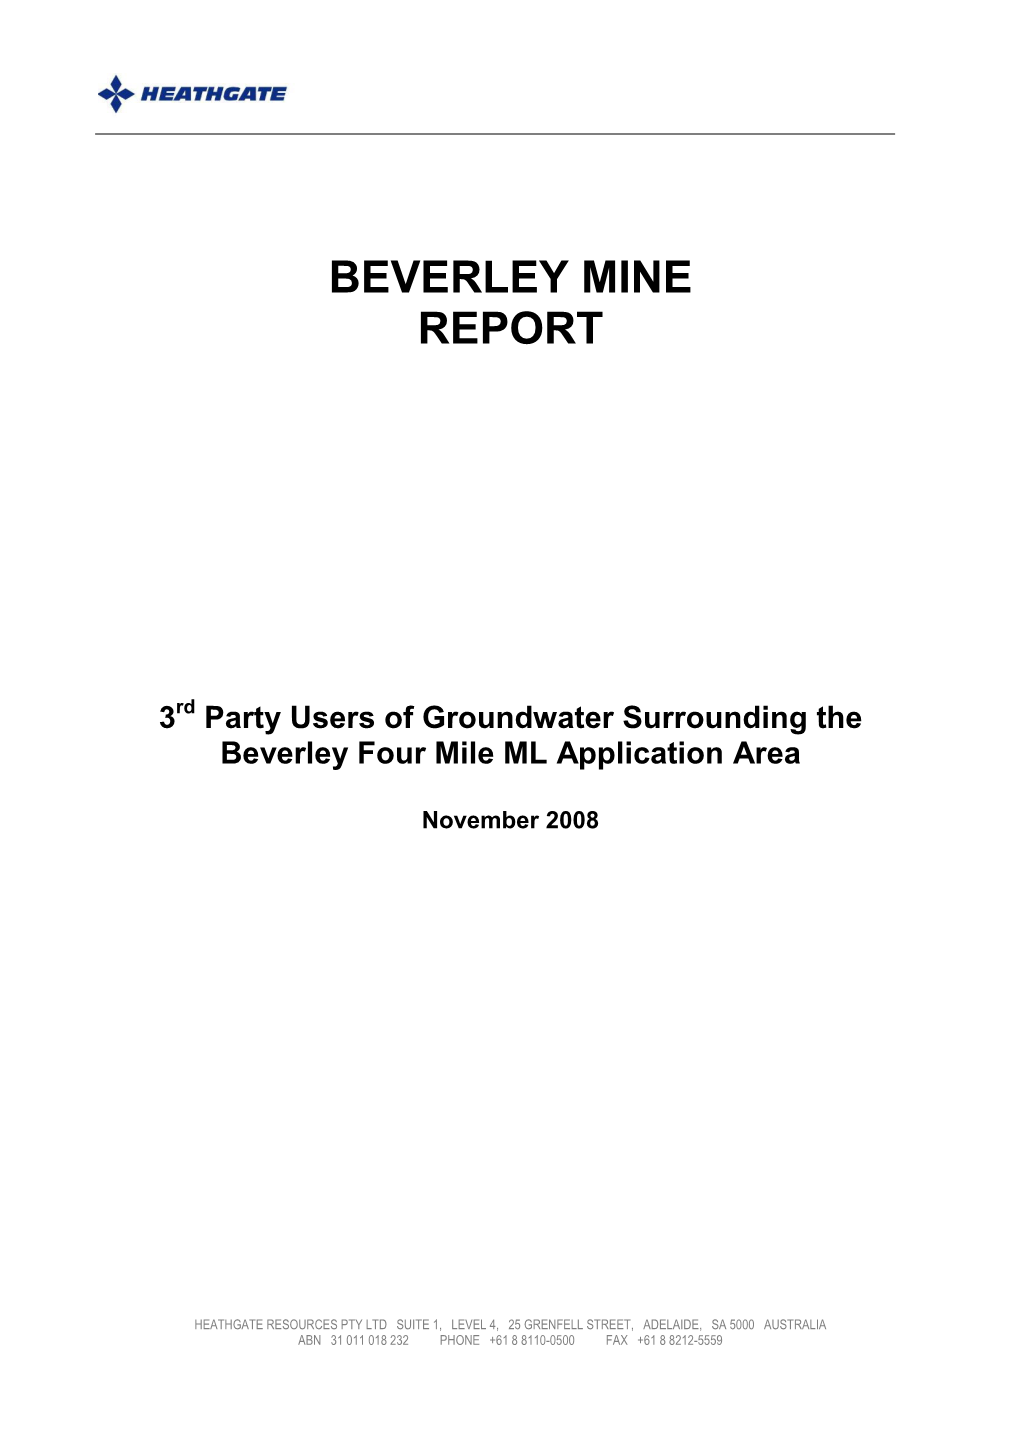 Beverley Mine Report